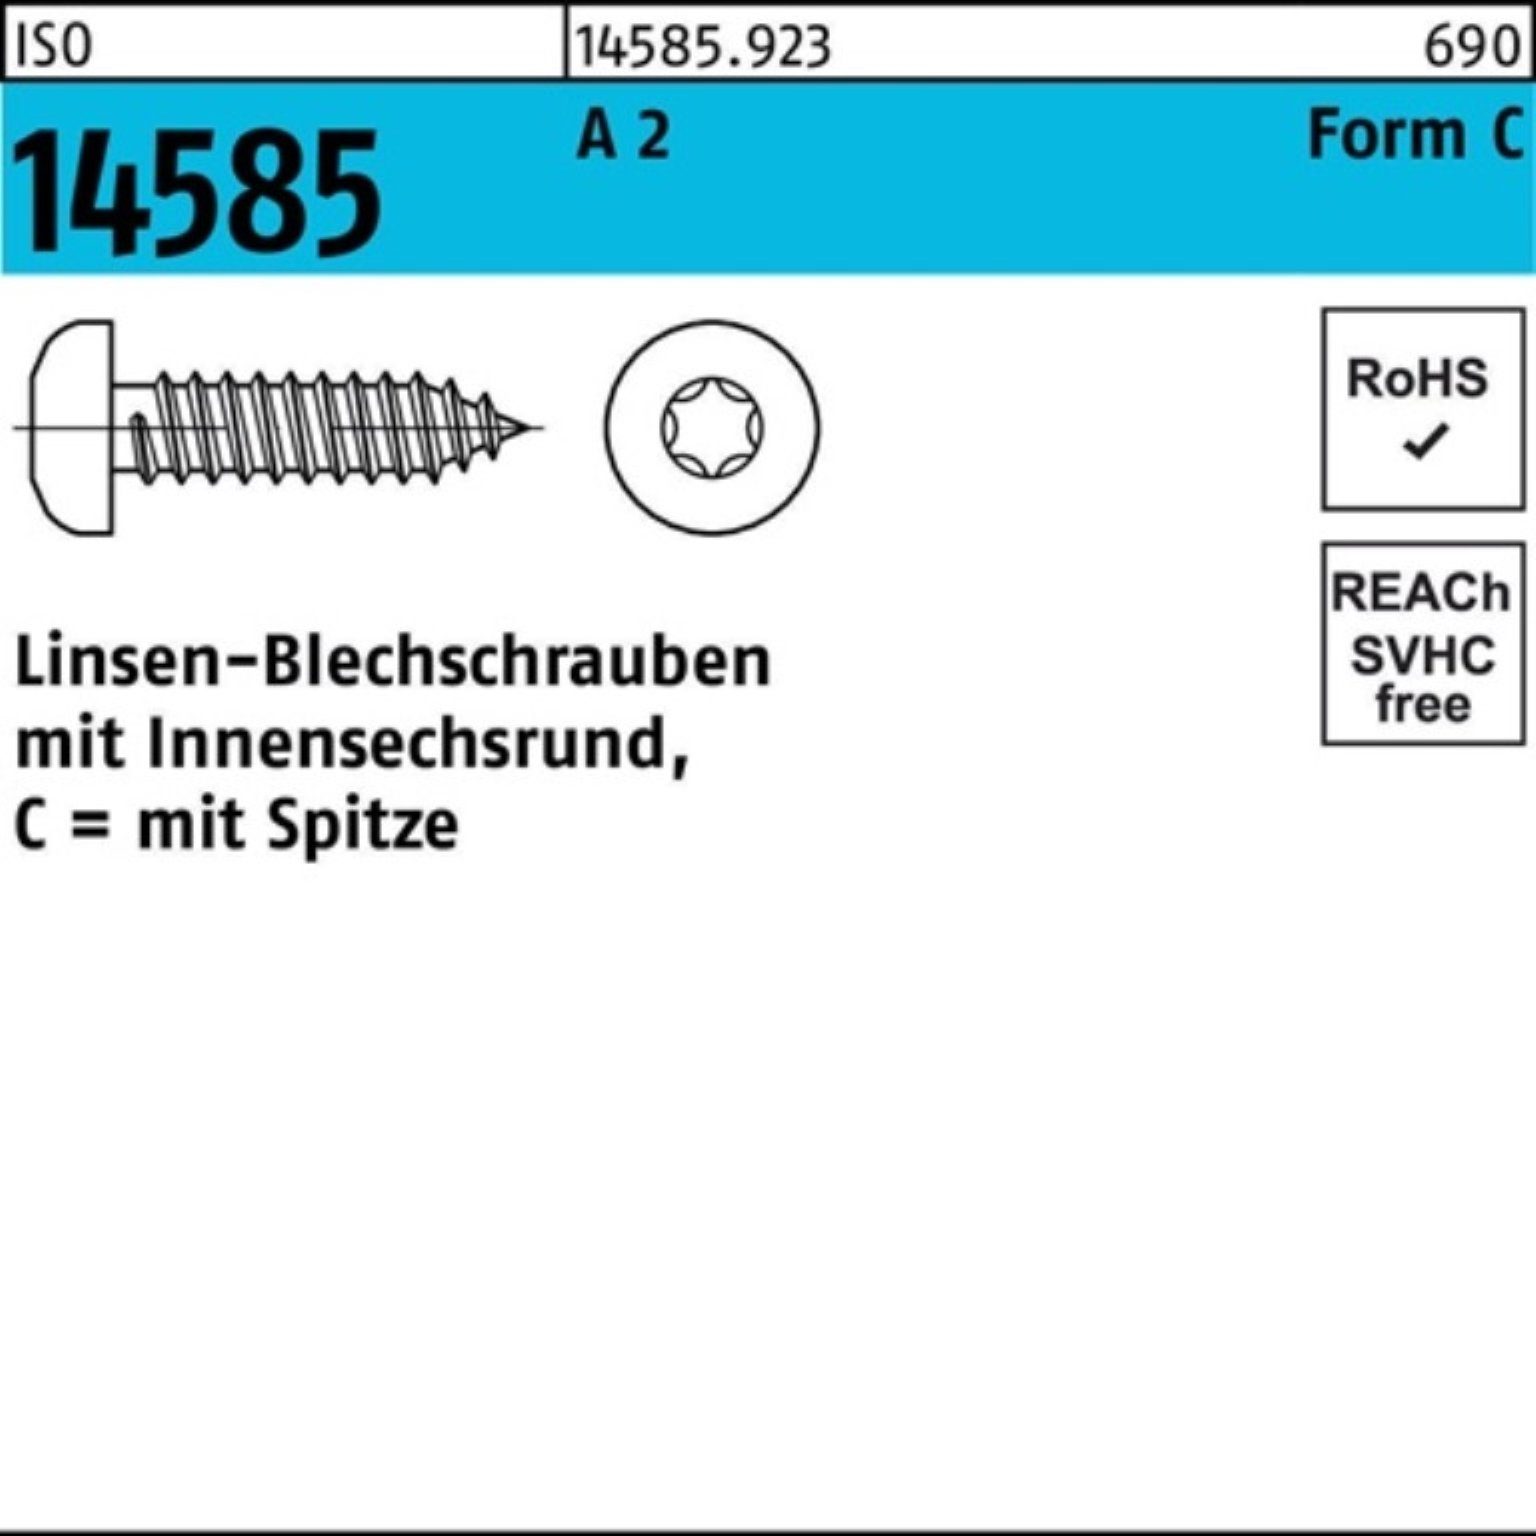 500 St A 2 Blechschraube ISO -C 5,5x 14585 Linsenblechschraube Pack T25 500er ISR 13 Reyher